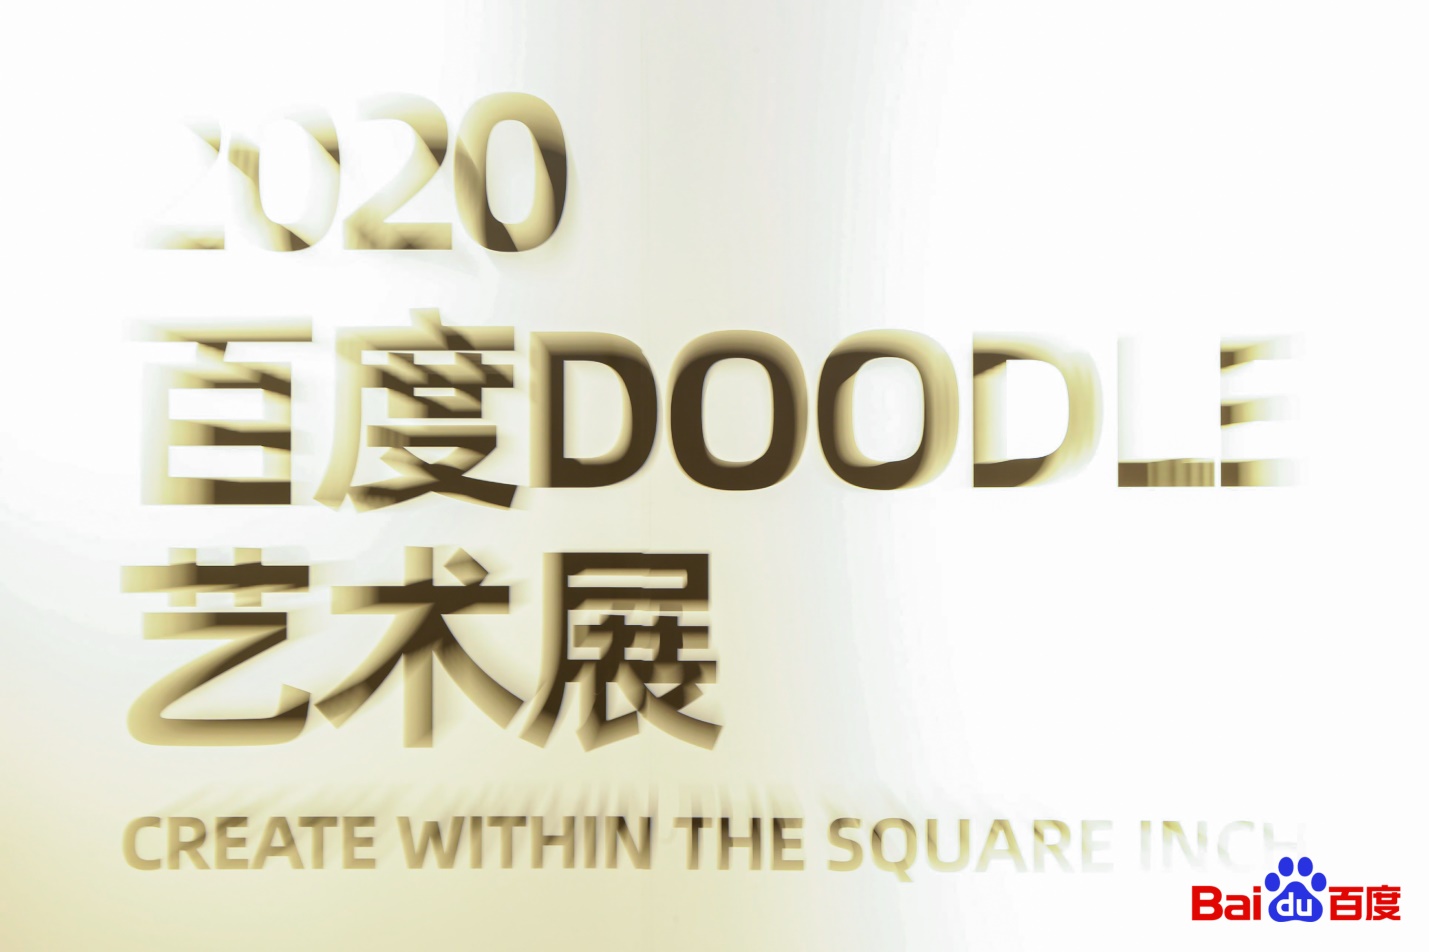 百度doodle展览周年庆策划